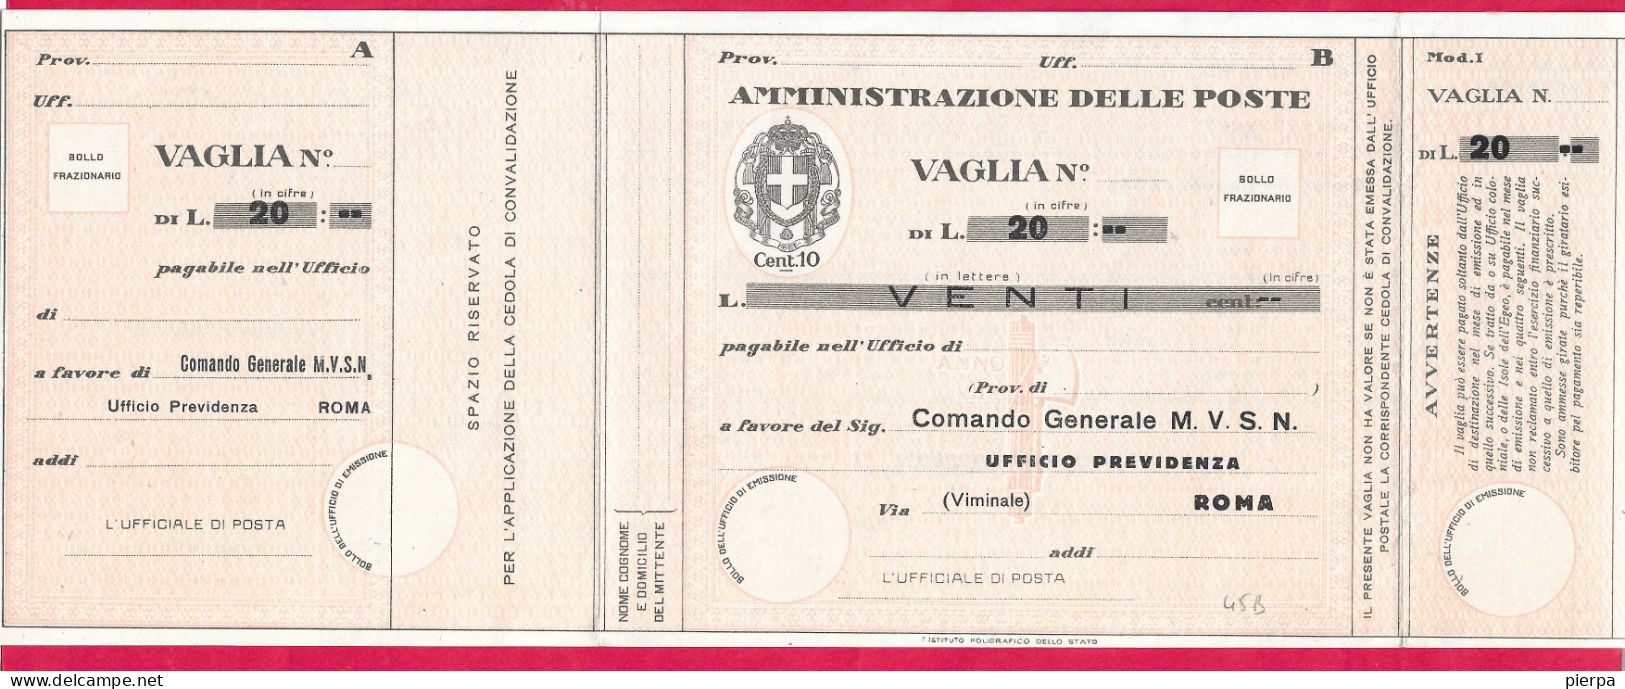 MODULO VAGLIA POSTALE C.10 (CAT. INT. 45/B) PRECOMPILATO M.V.S.N. LIRE 20 - NON VIAGGIATO - Strafport Voor Mandaten